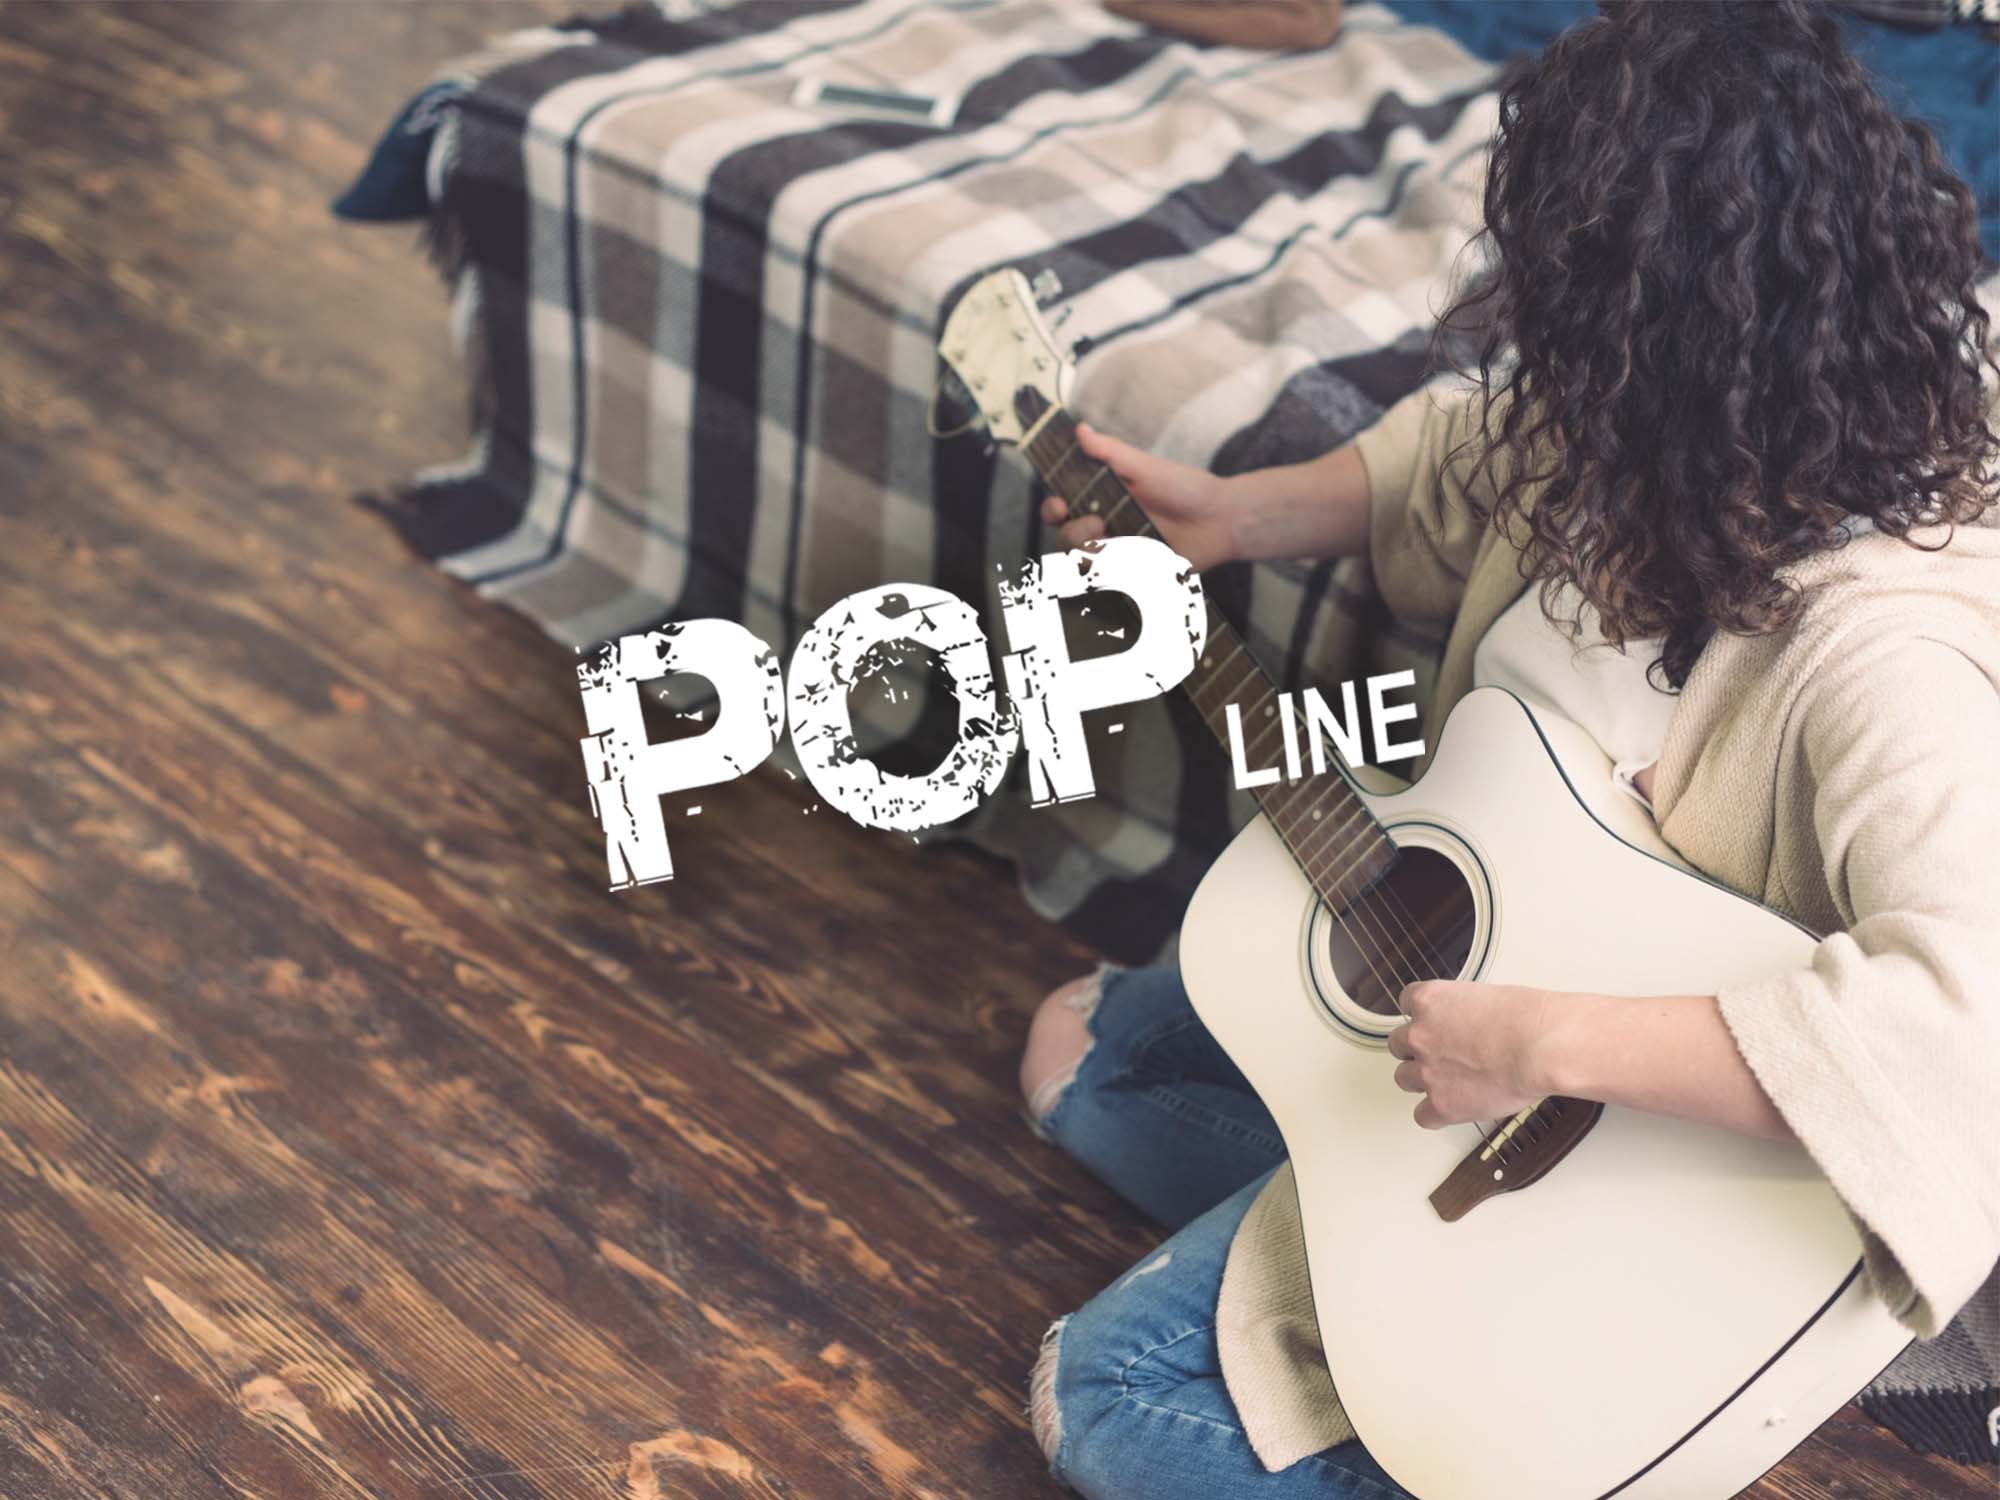 Os cabos para guitarra da Datalink, são compostos por três linhas: Linha POP, Linha Garage e Linha Revolution, pensadas para atender as necessidades do cliente.